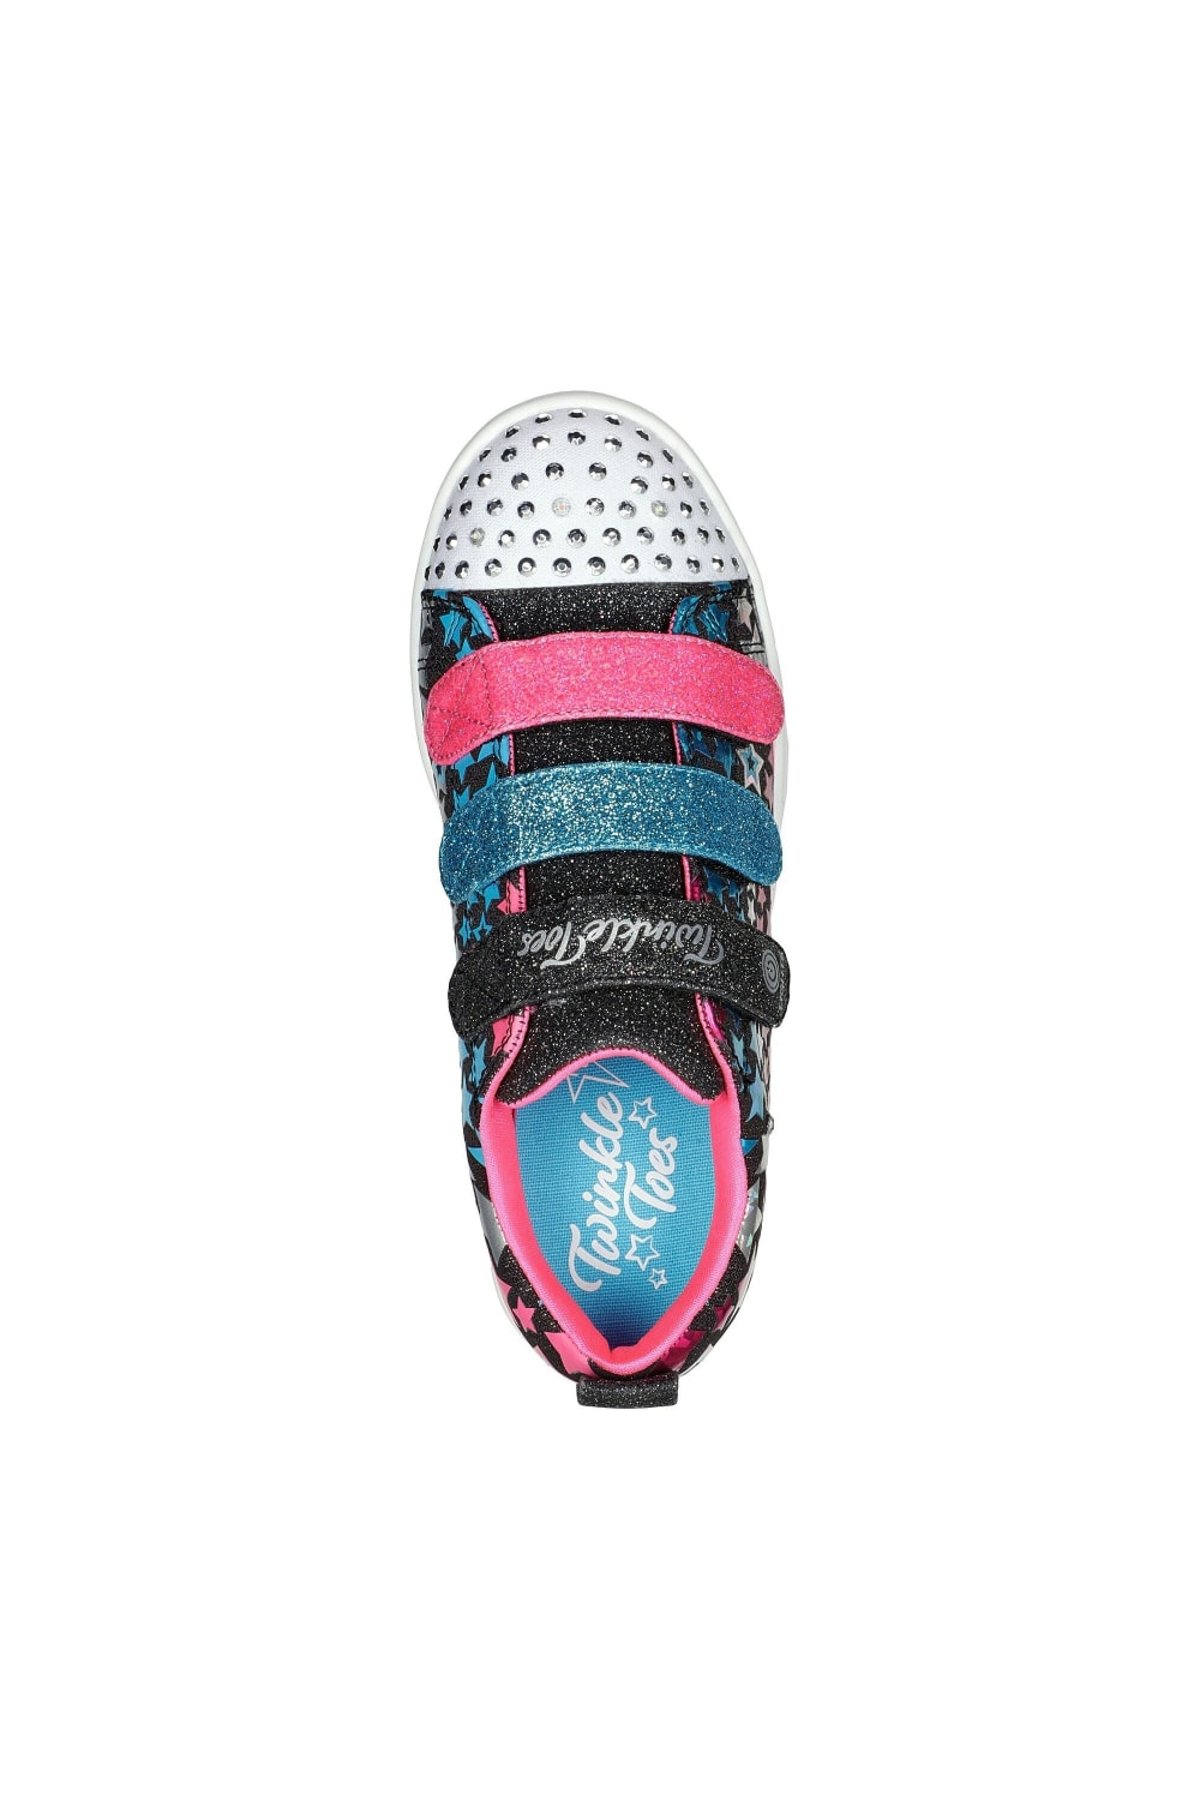 Messy Huh wine Skechers Black/Pink/Blue Girls Twinkle Toes Star Sneakers | Verishop